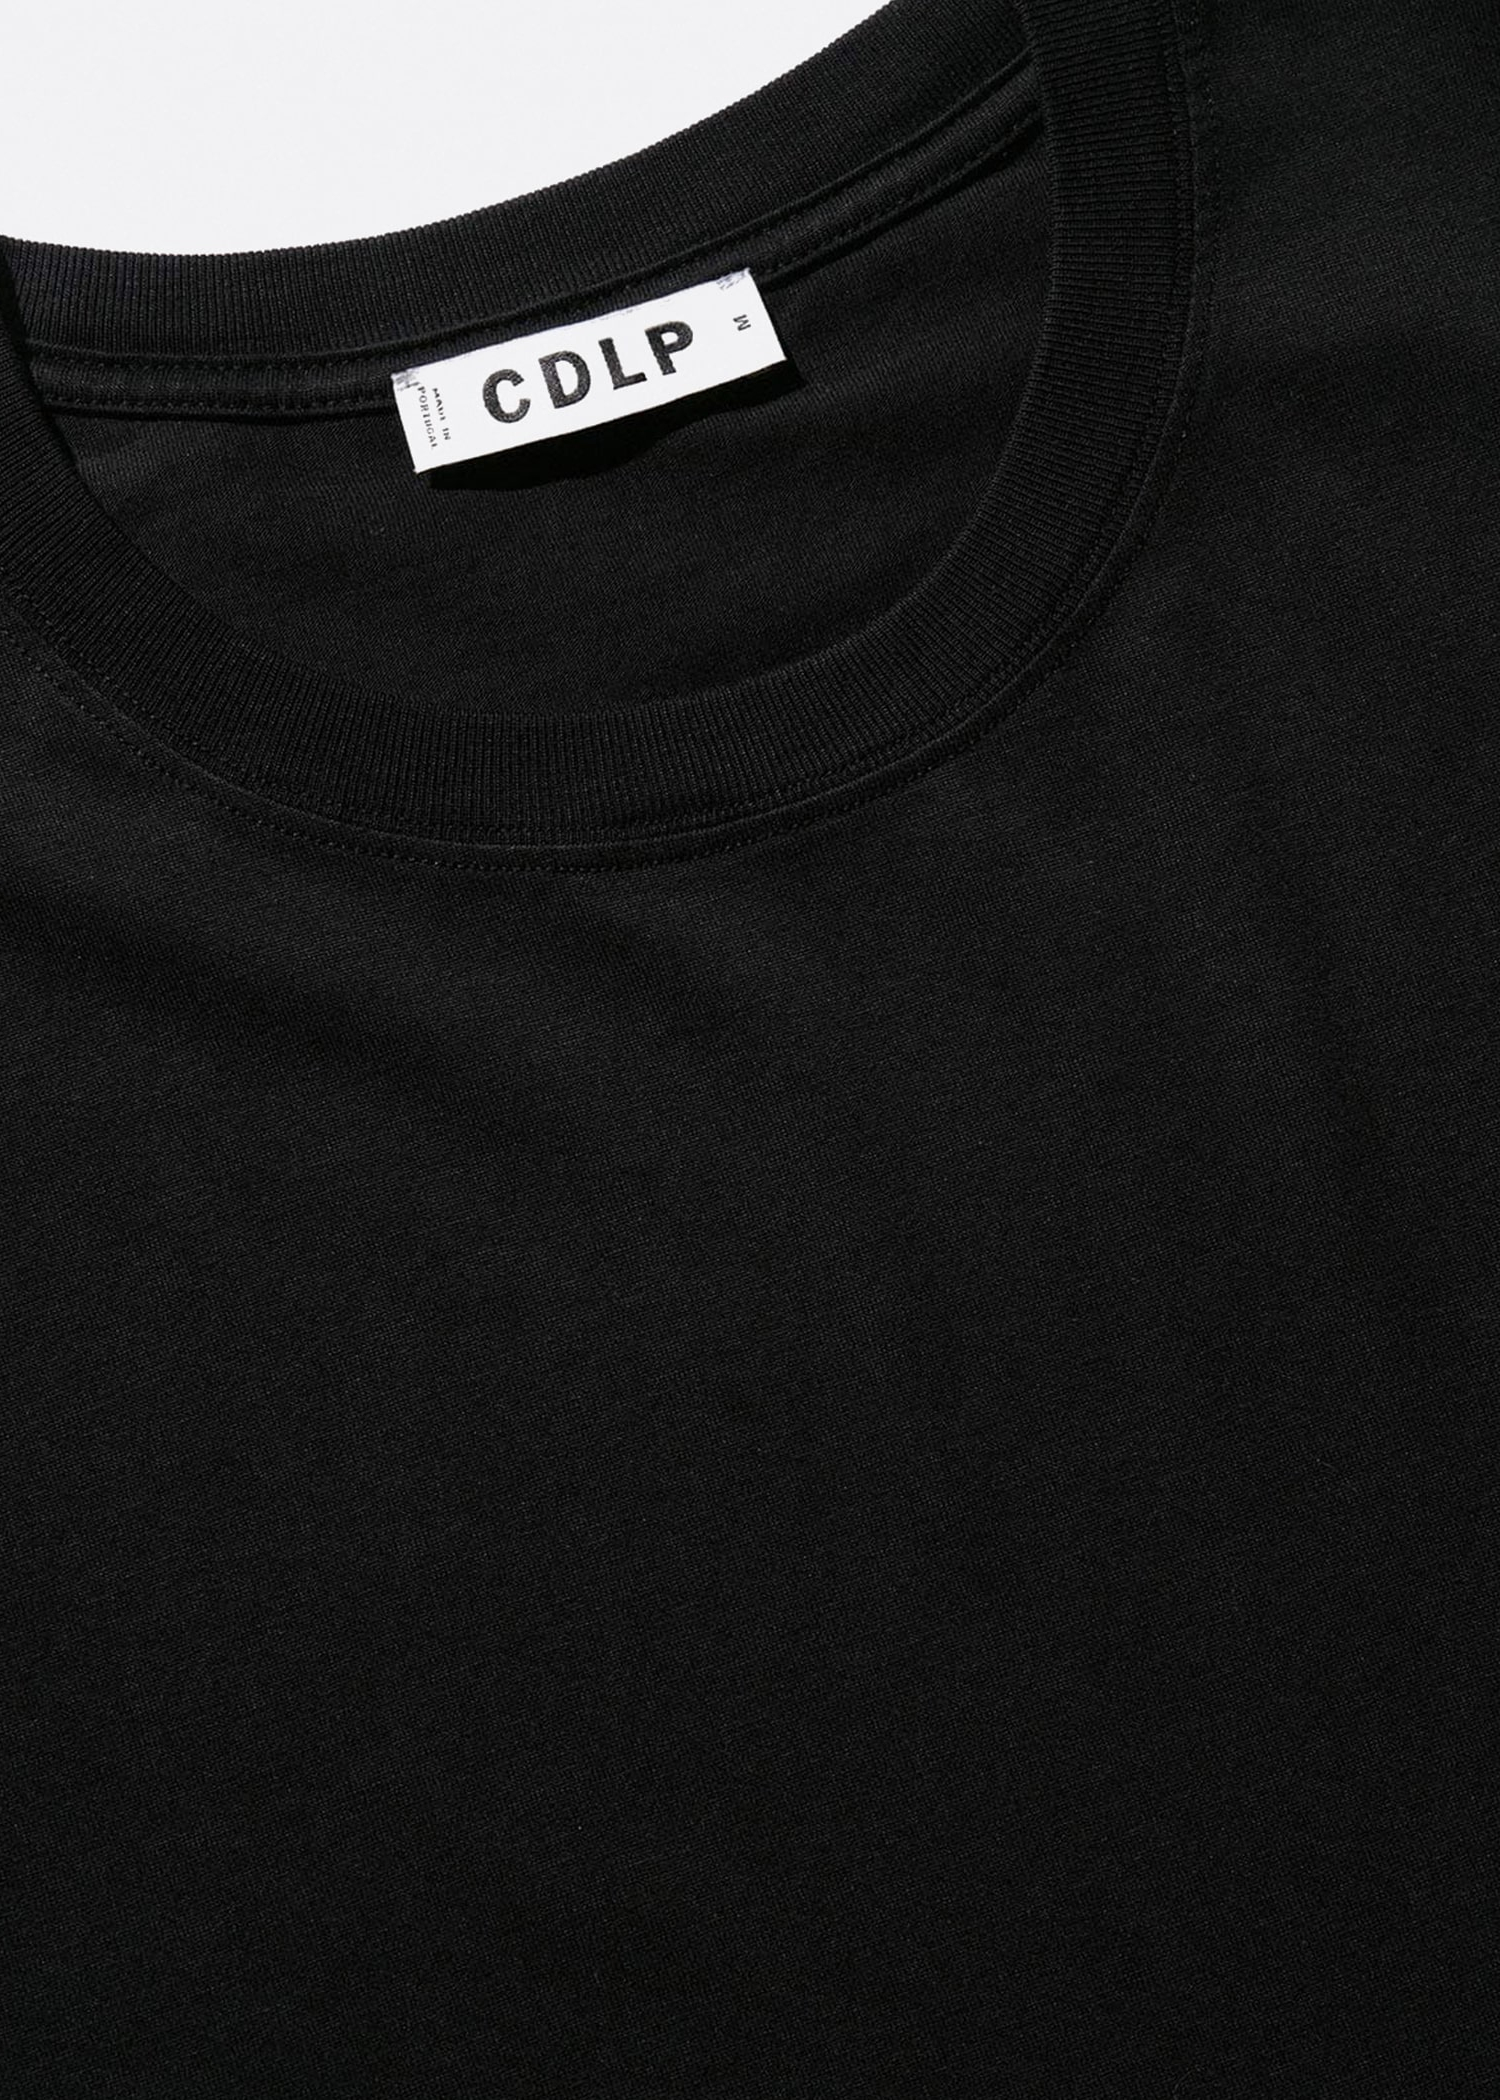 CDLP Sort Midweight T-shirt